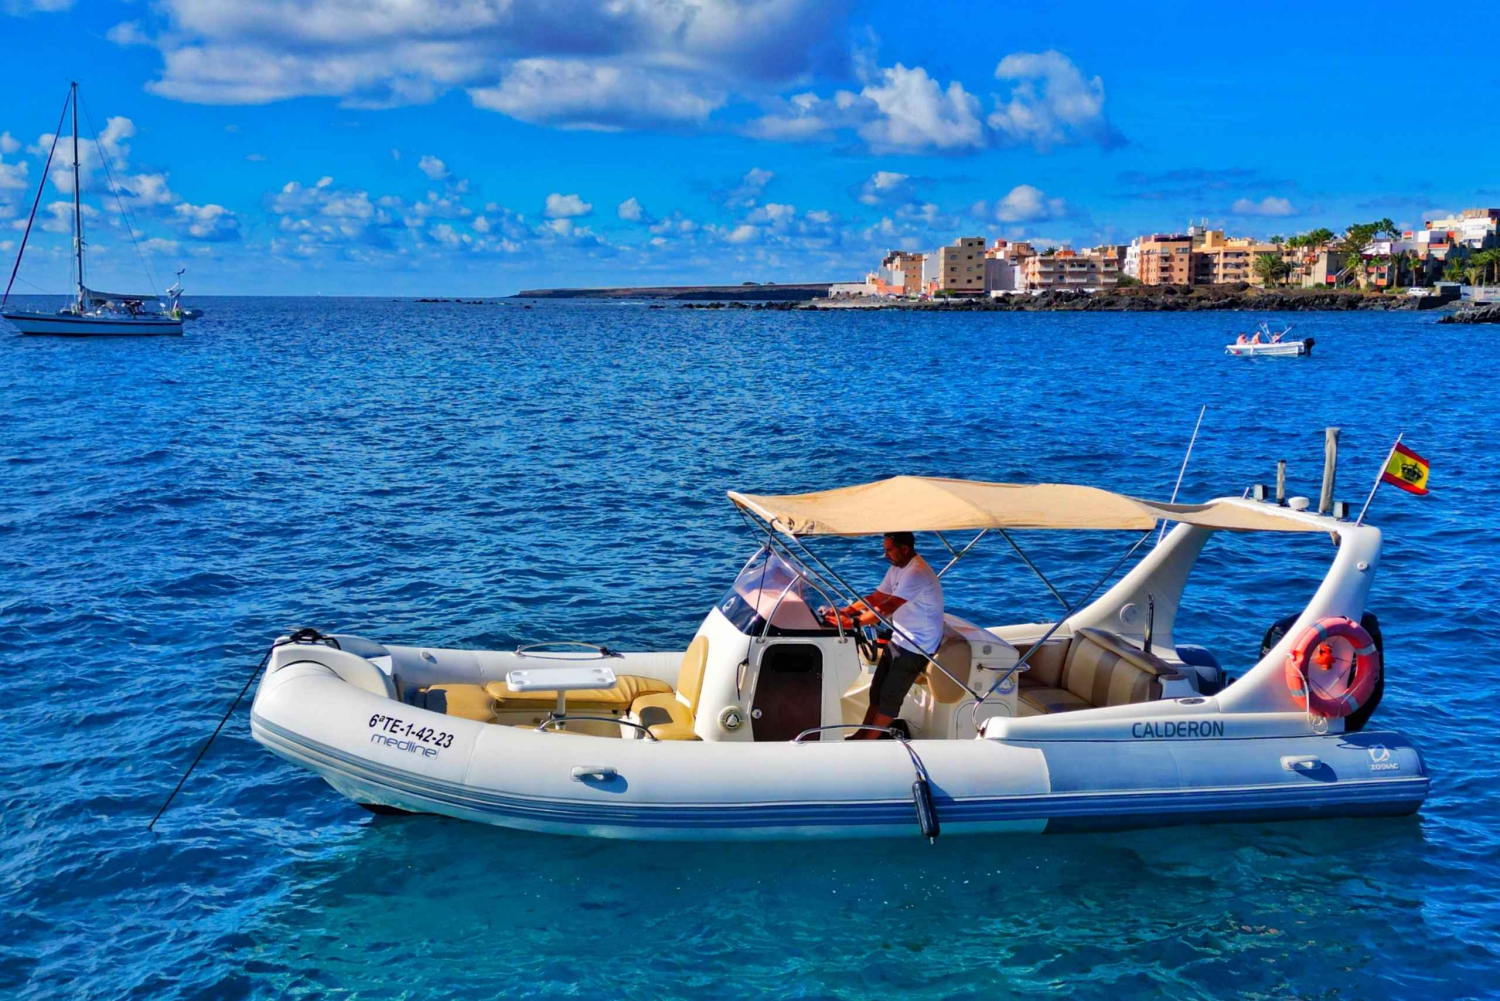 'Seaside Bliss: Boat, Snorkel, Sun, Sip, Snack Delights'